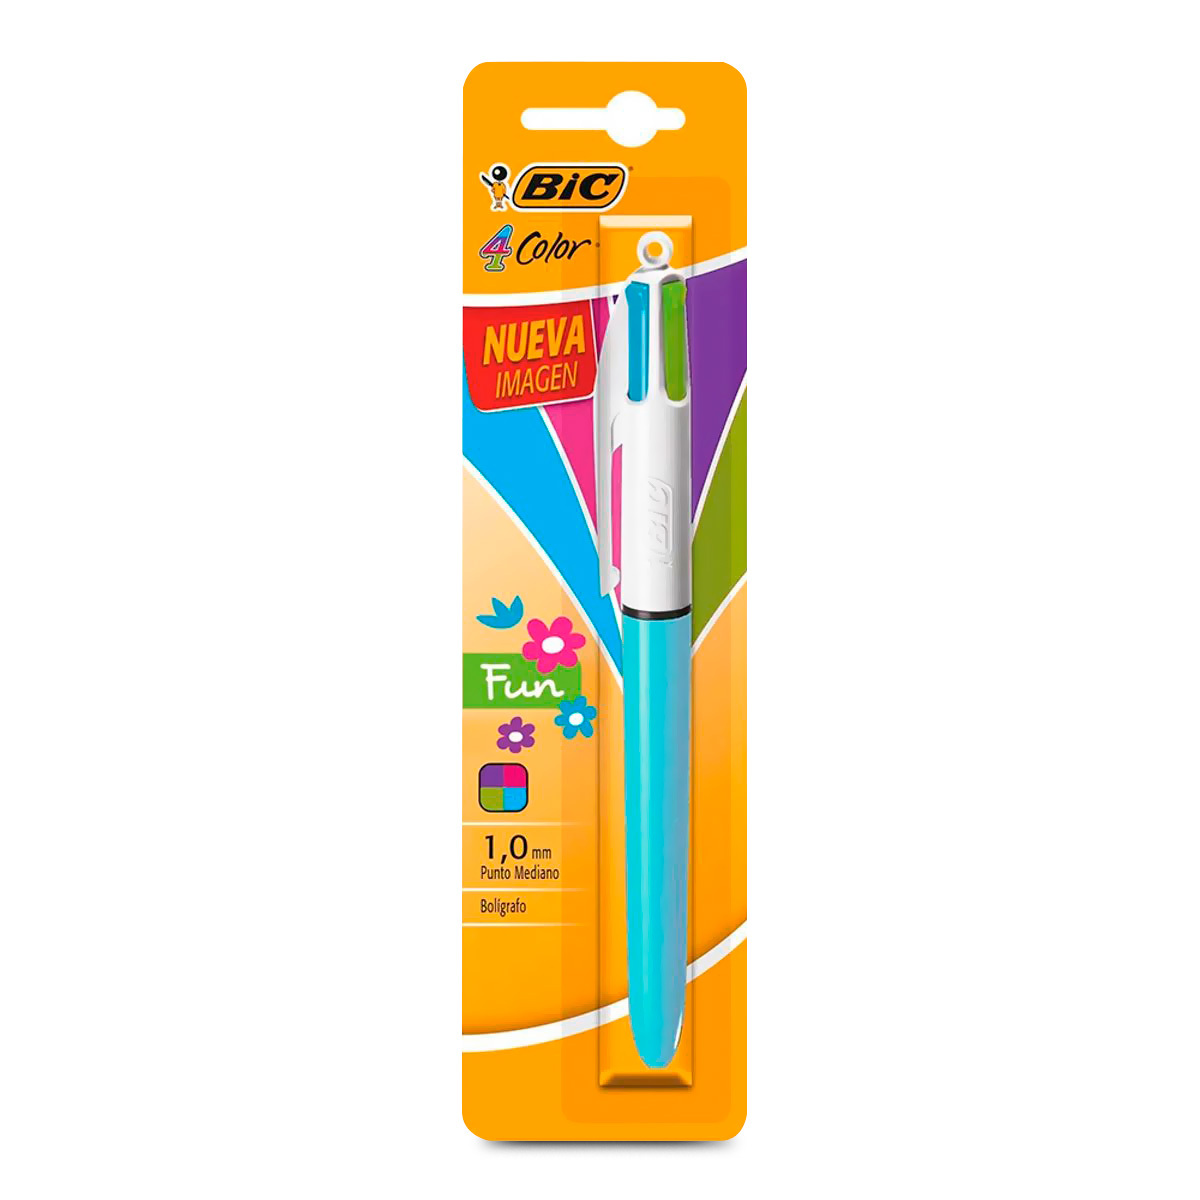 BIC Bolígrafos de 4 colores, punta media (0.039 pulgadas), 4 colores en 1  juego de bolígrafos multicolores, paquete de 3 unidades, bolígrafos para